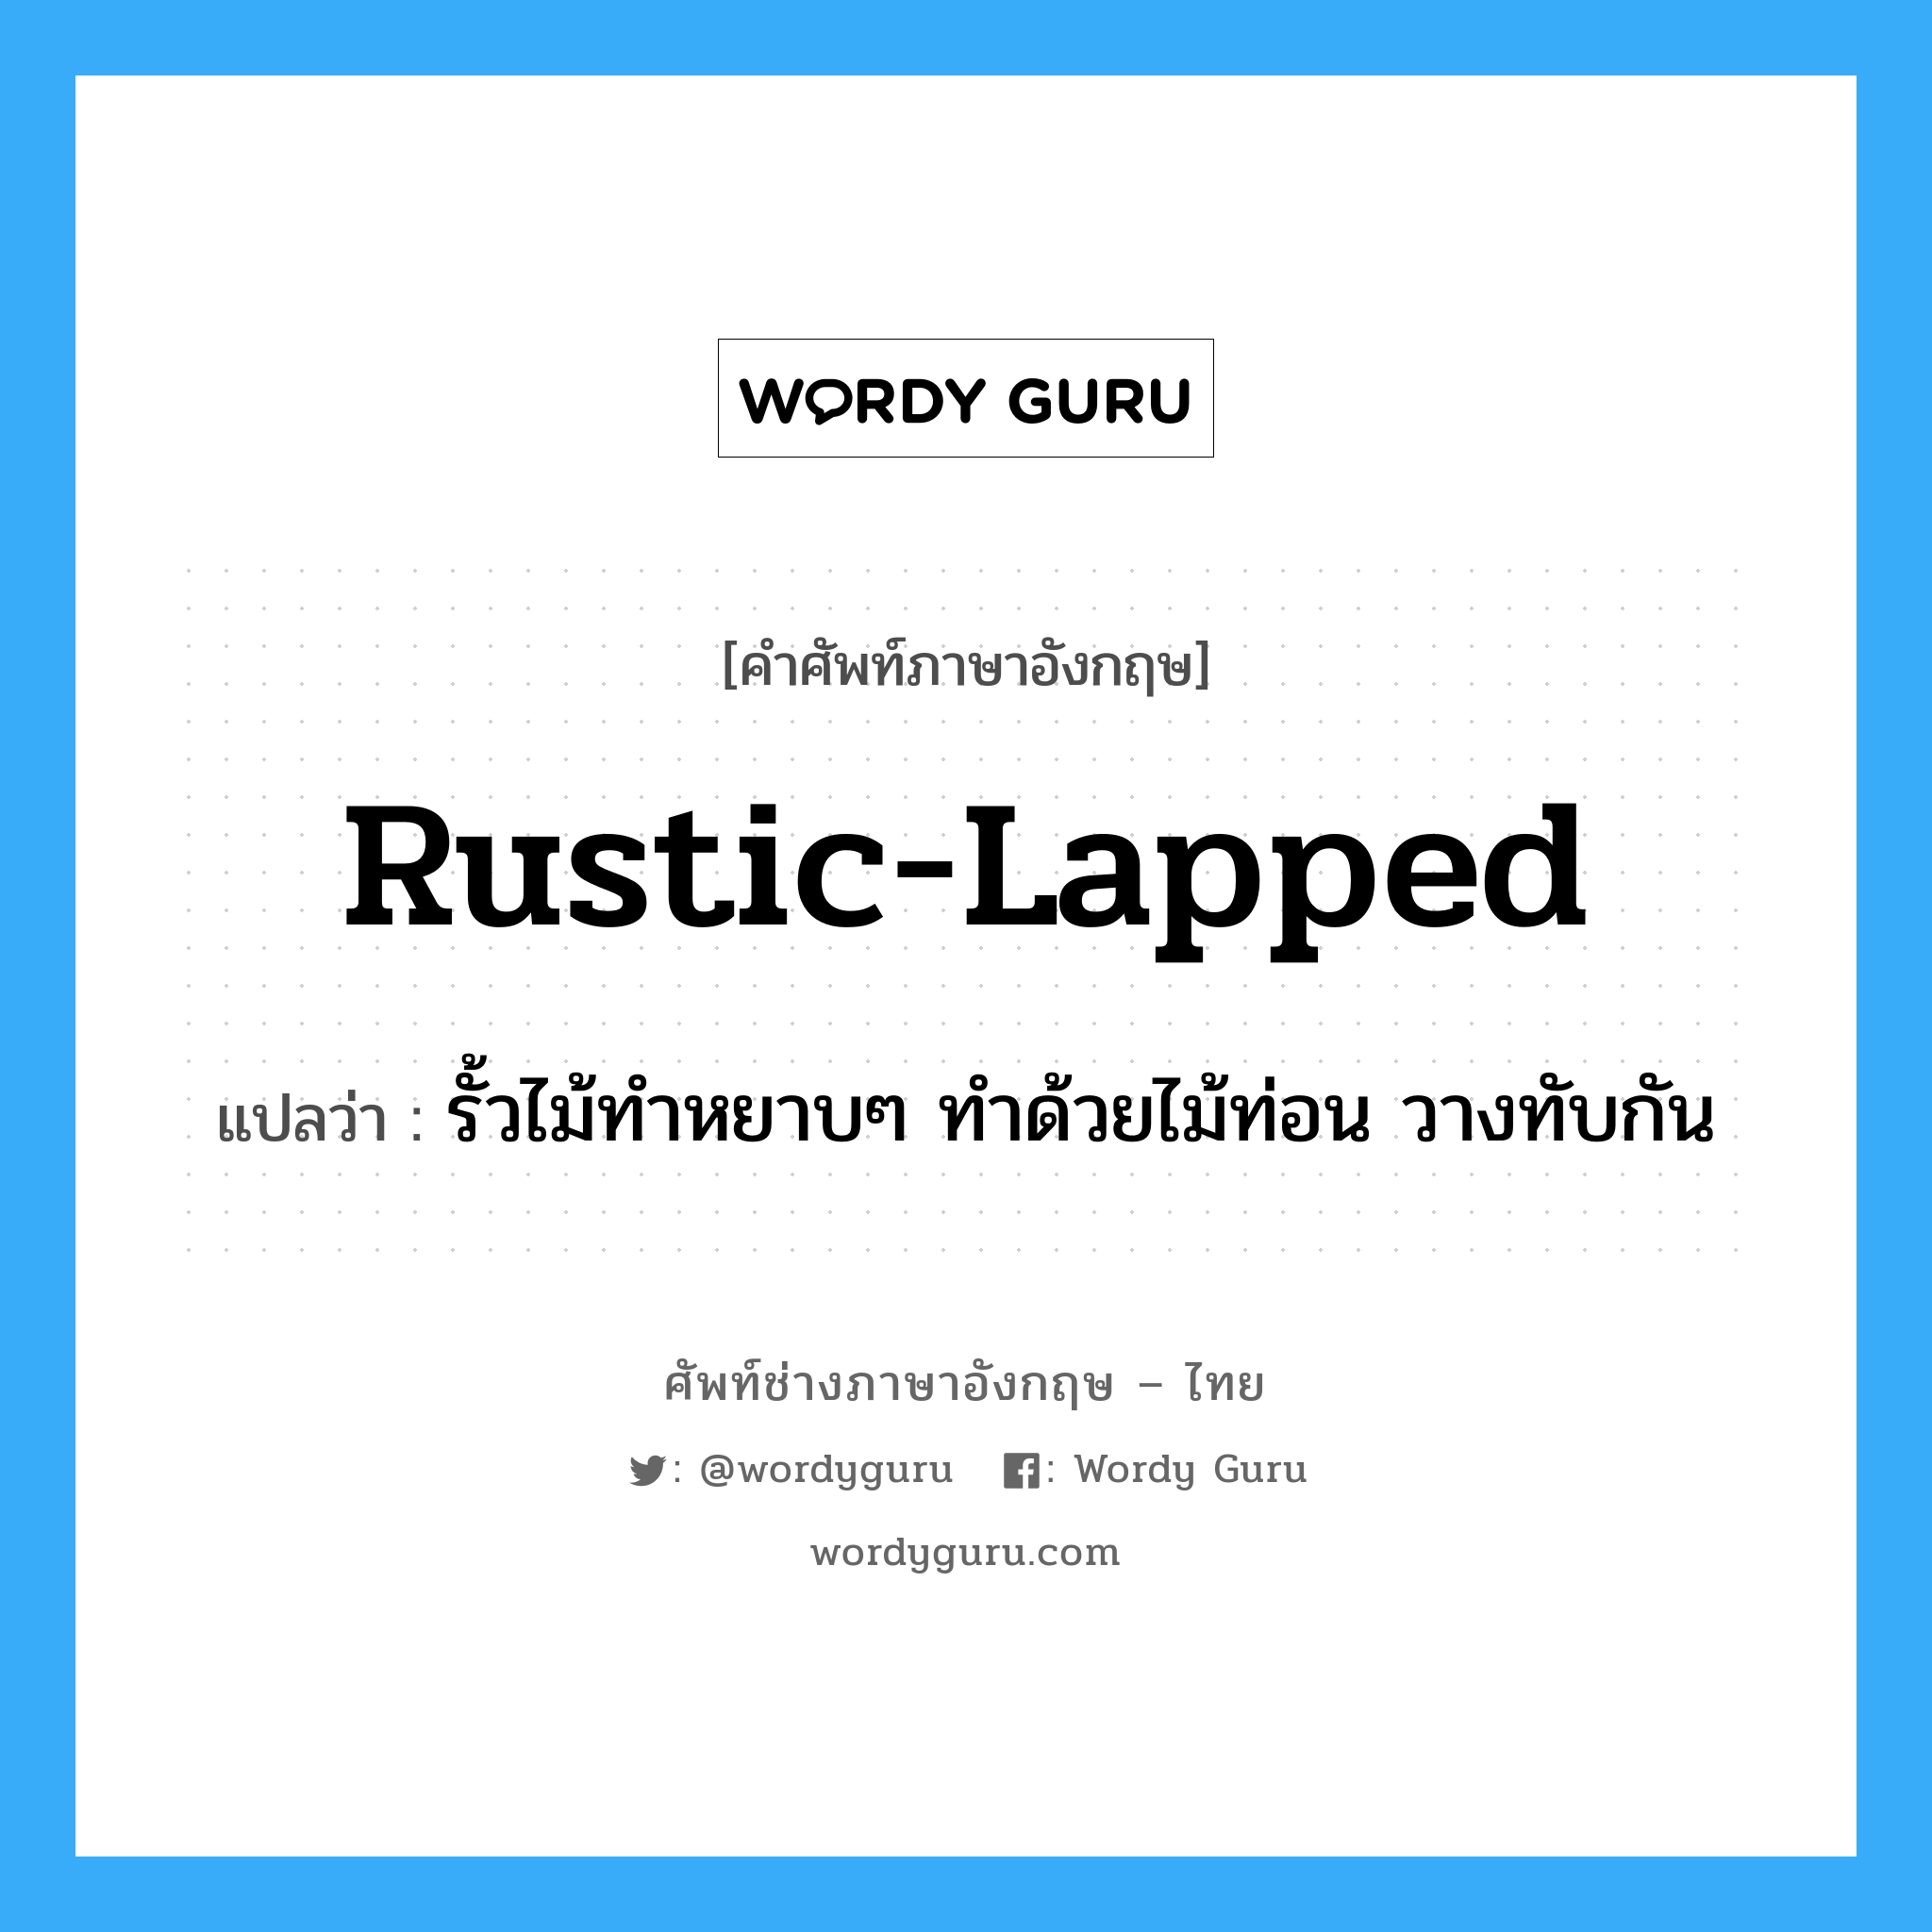 rustic-lapped แปลว่า?, คำศัพท์ช่างภาษาอังกฤษ - ไทย rustic-lapped คำศัพท์ภาษาอังกฤษ rustic-lapped แปลว่า รั้วไม้ทำหยาบๆ ทำด้วยไม้ท่อน วางทับกัน